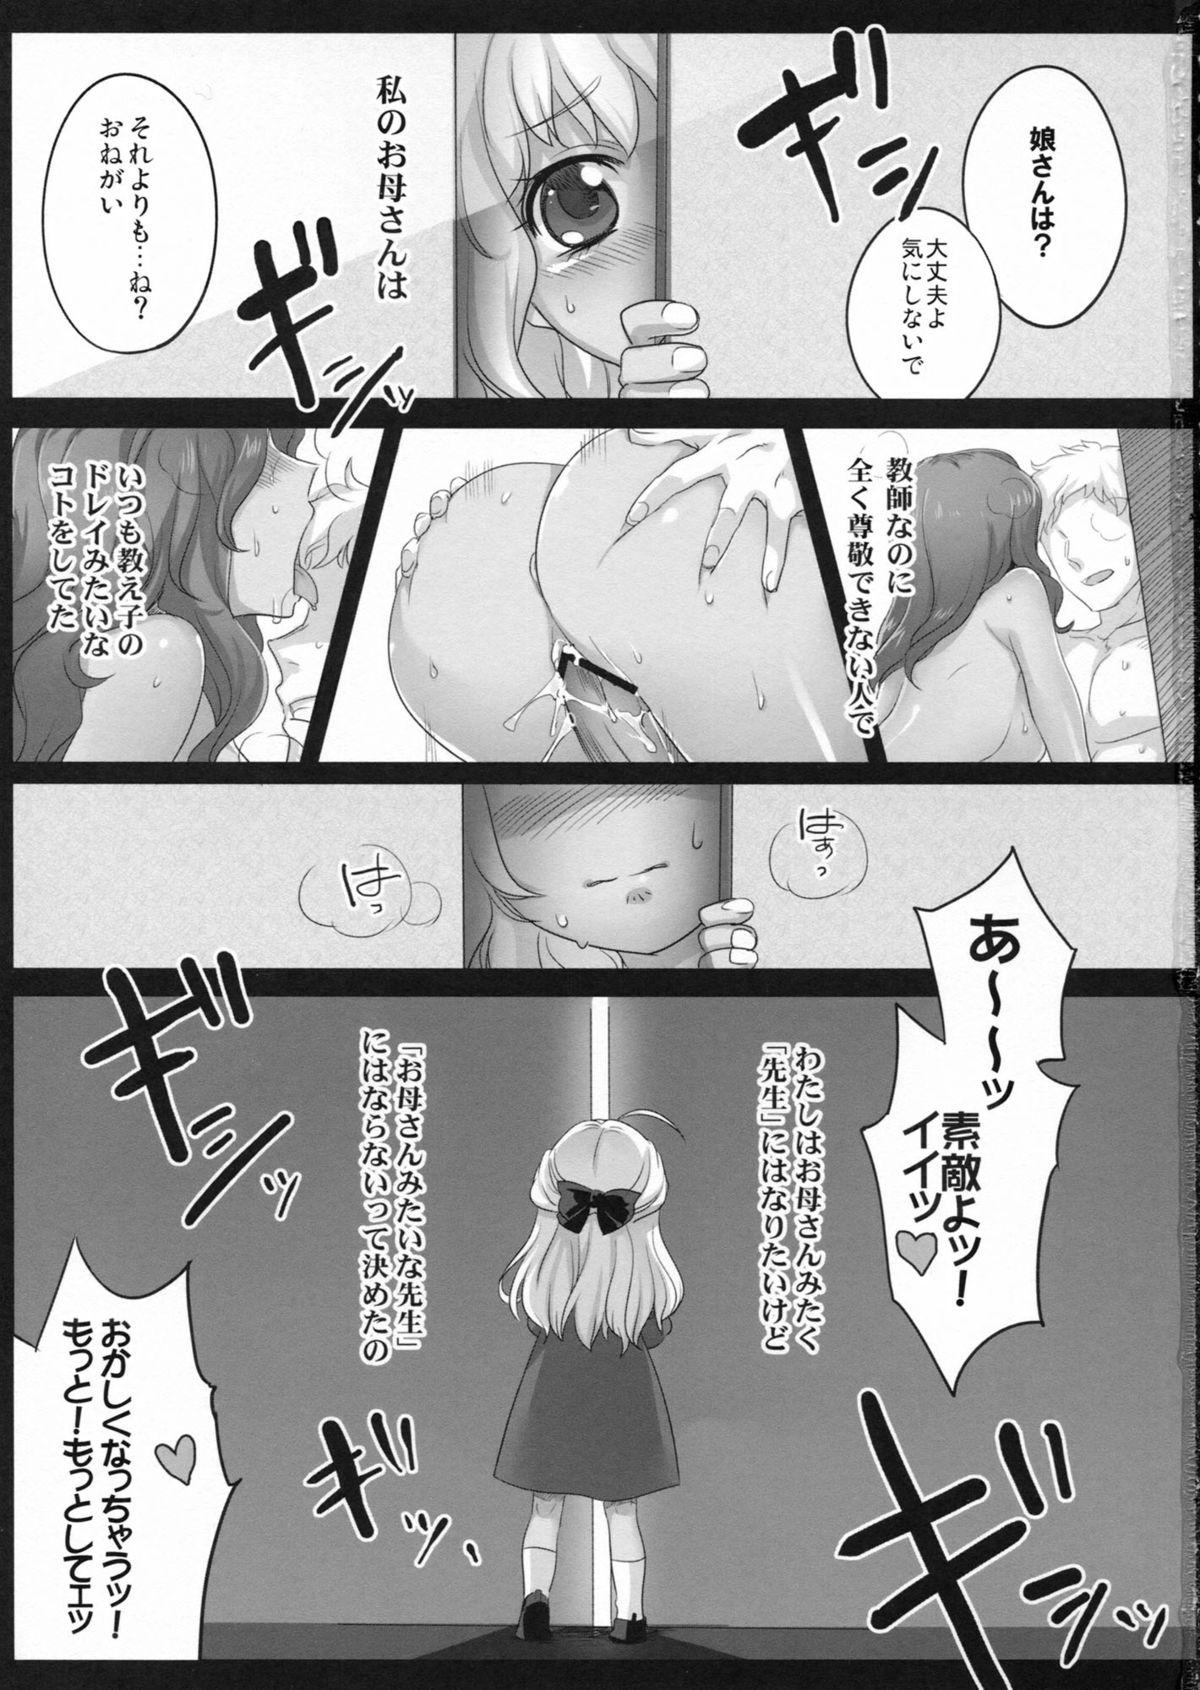 Man Akogare no Sensei Girl Sucking Dick - Page 2